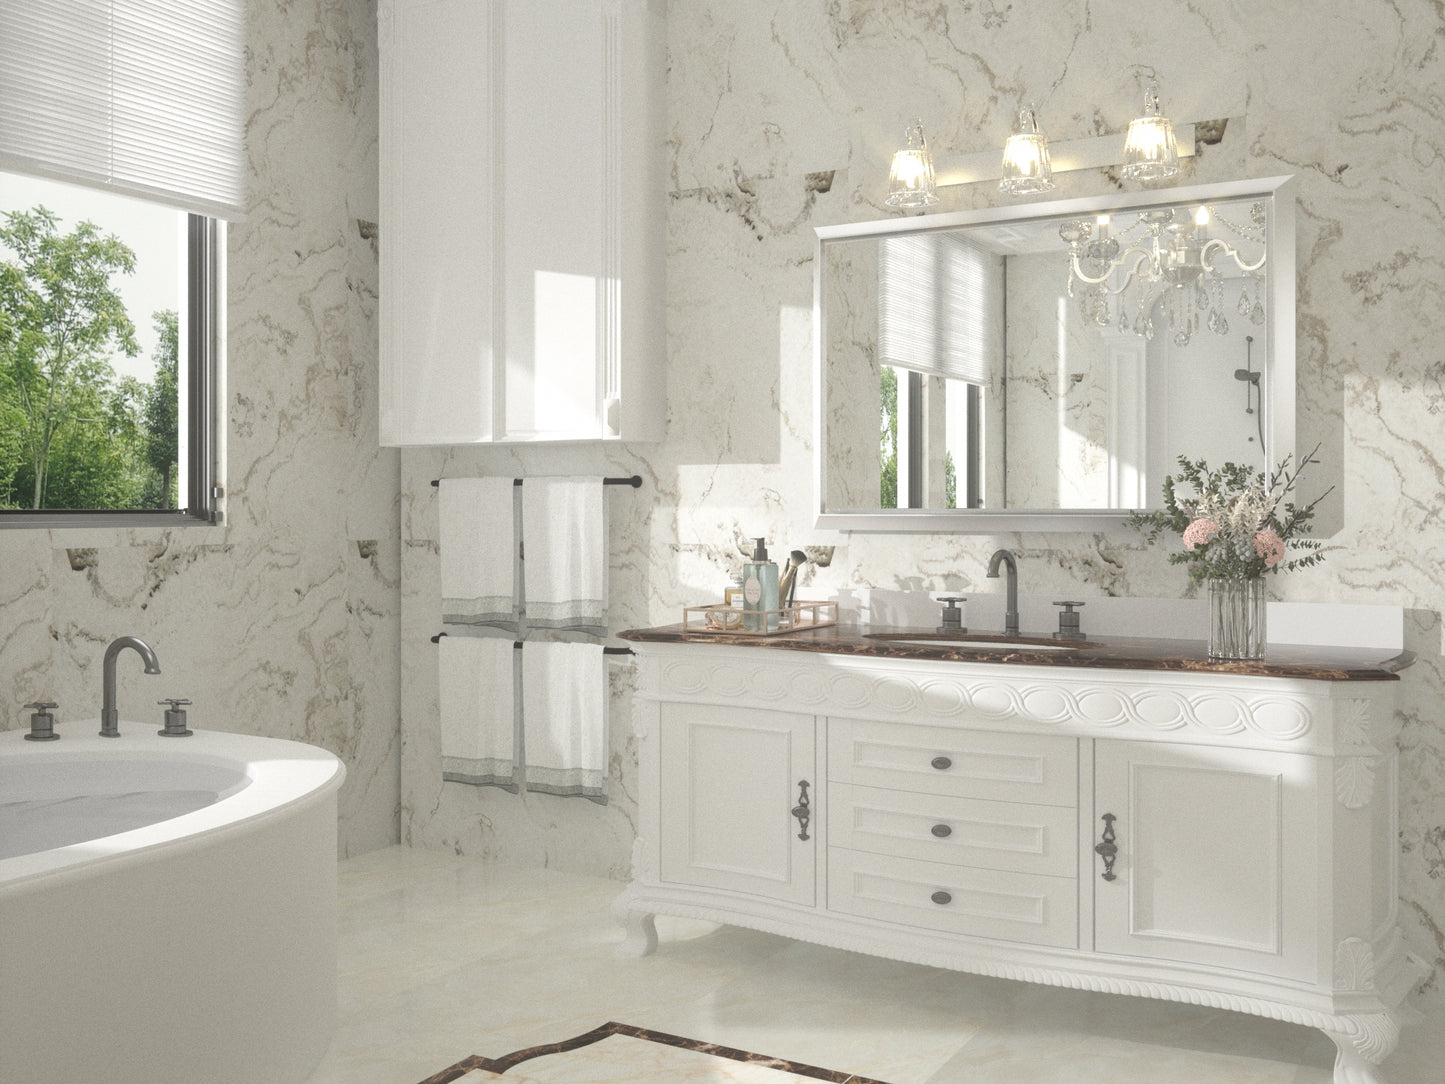 
                  
                    36 x 24 pouces | PILOCOS Miroir de salle de bain vintage moderne pour mur, miroir biseauté en aluminium avec cadre en métal
                  
                